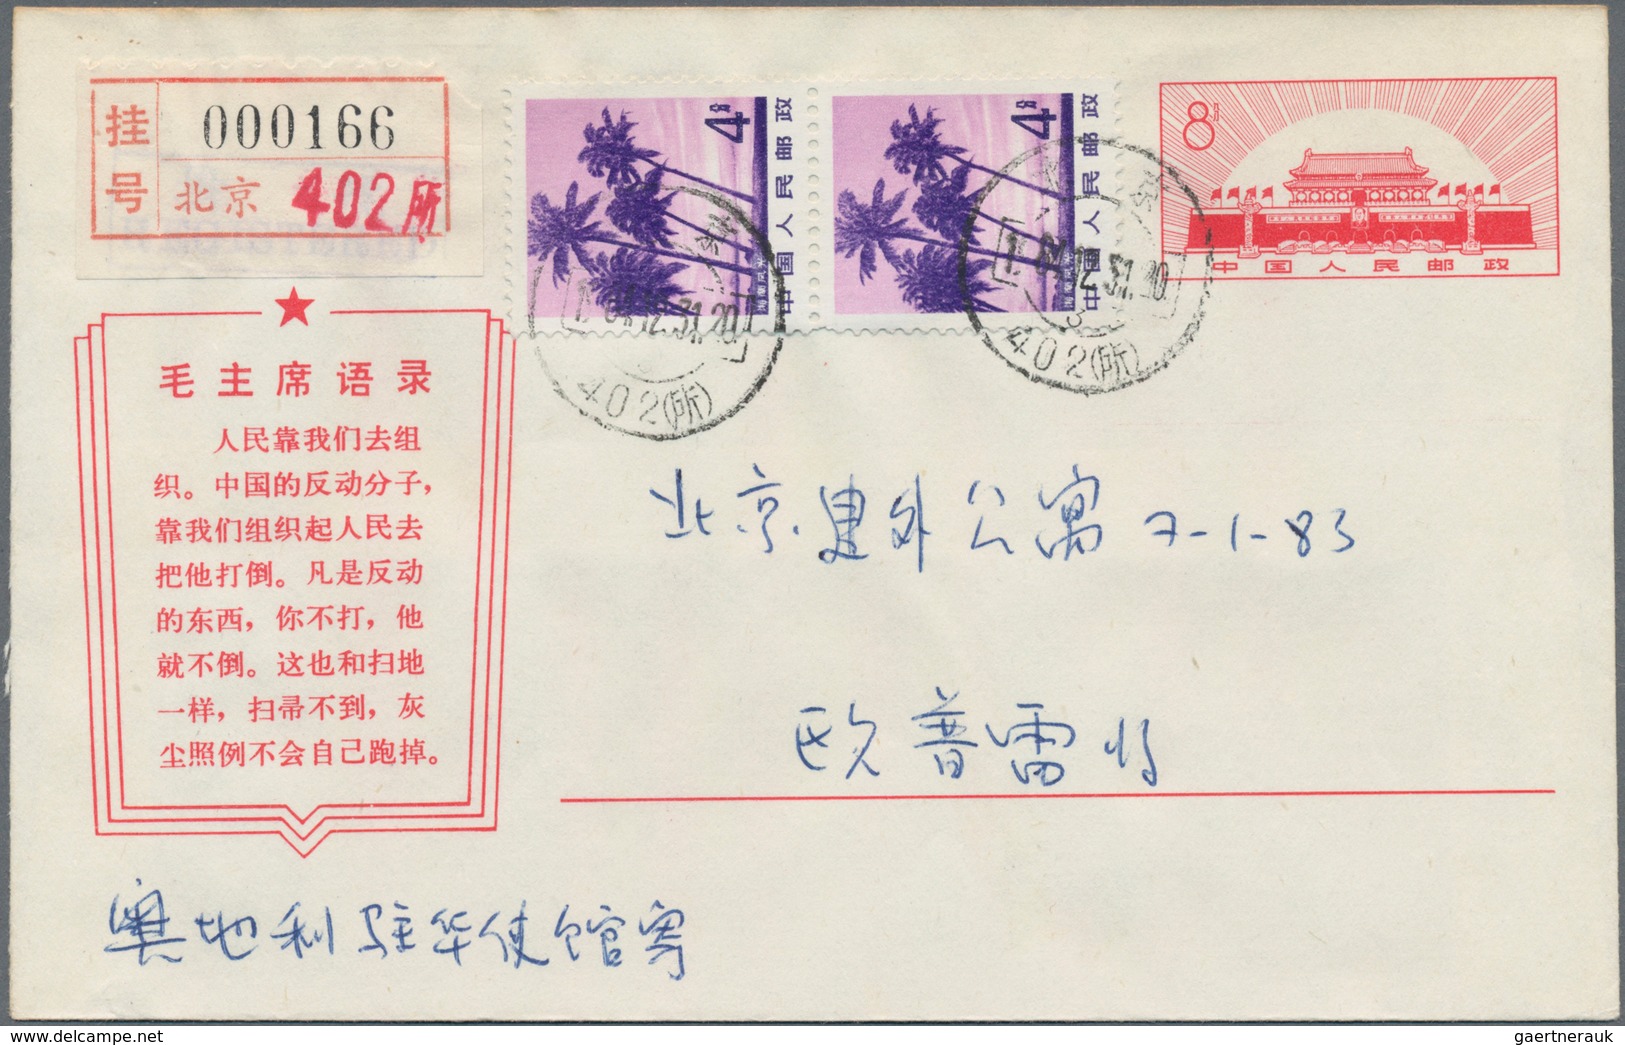 China - Volksrepublik - Ganzsachen: 1967, Cultural Revolution Envelope 8 F. (15-1967) Uprated 4 F. P - Cartes Postales